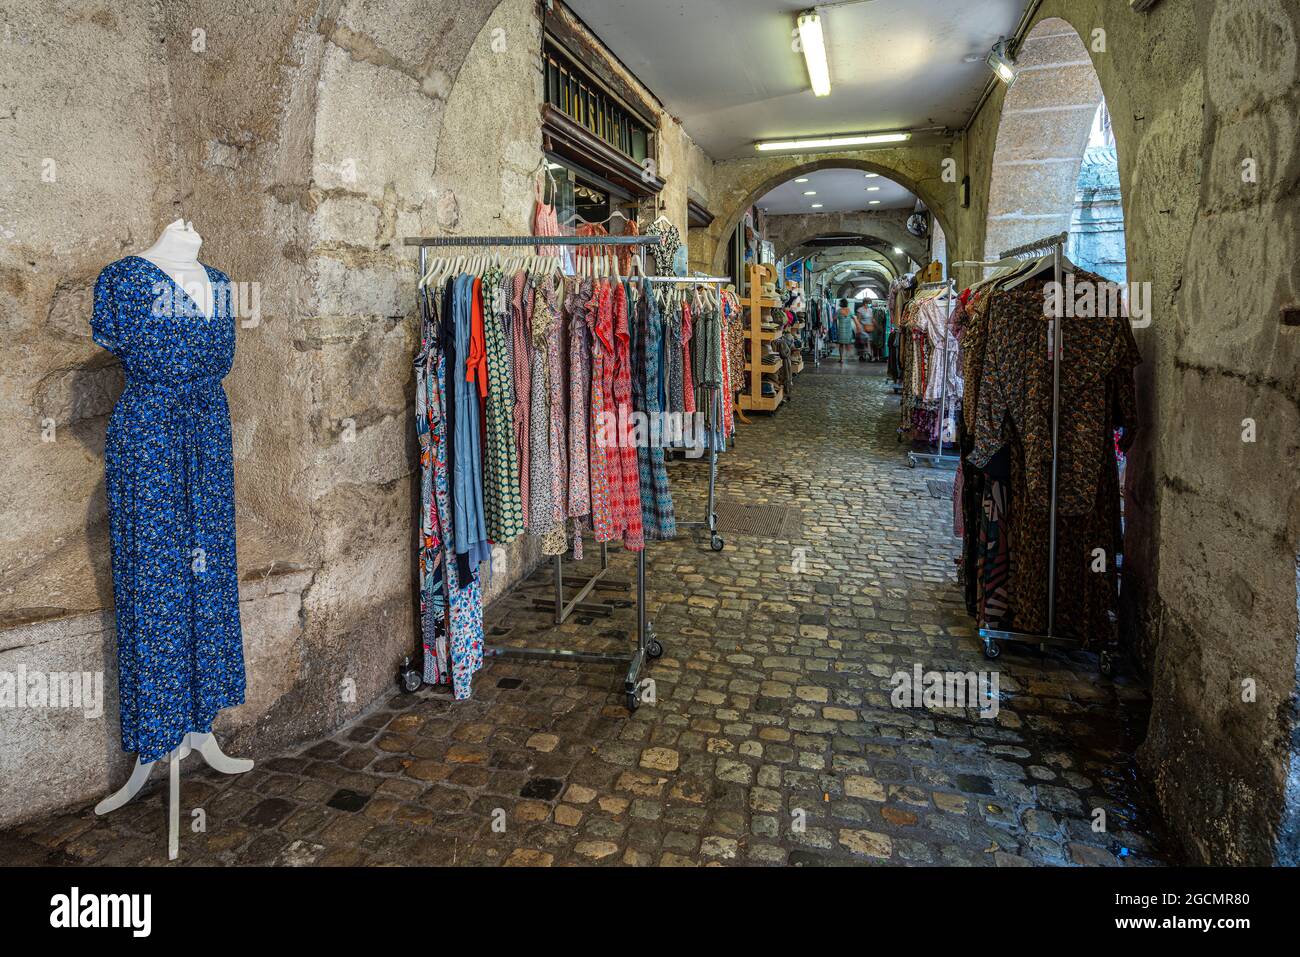 Tienda de ropa al aire libre durante el mercado tradicional en la antigua ciudad de Annecy. Annecy, departamento de Saboya, región Auvernia-Rhône-Alpes, Francia Foto de stock